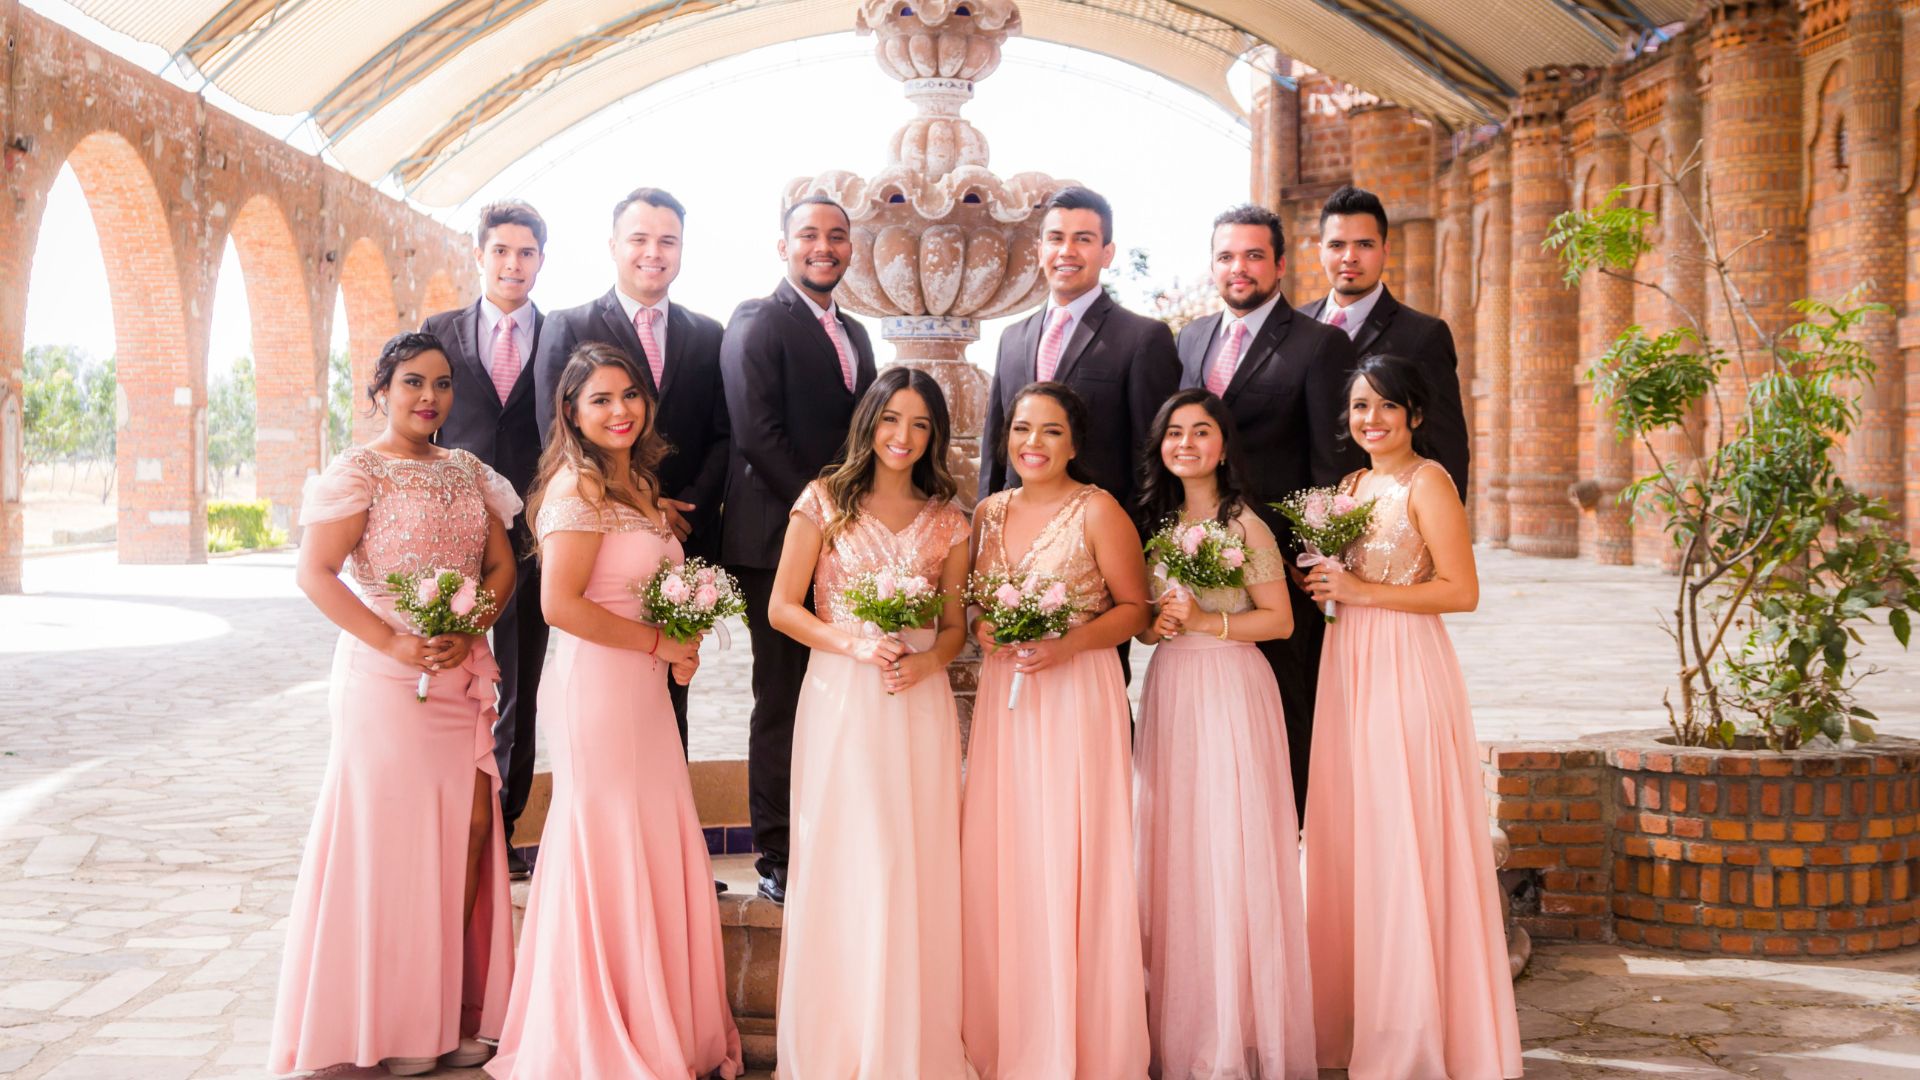 Imagem de uma foto de padrinhos e madrinhas de casamento. Os homens usam terno escuro e gravata na cor rosa e as mulheres, vestido longo na cor rosa claro. Todas seguram um buquê de rosas na mesma tonalidade do vestido.